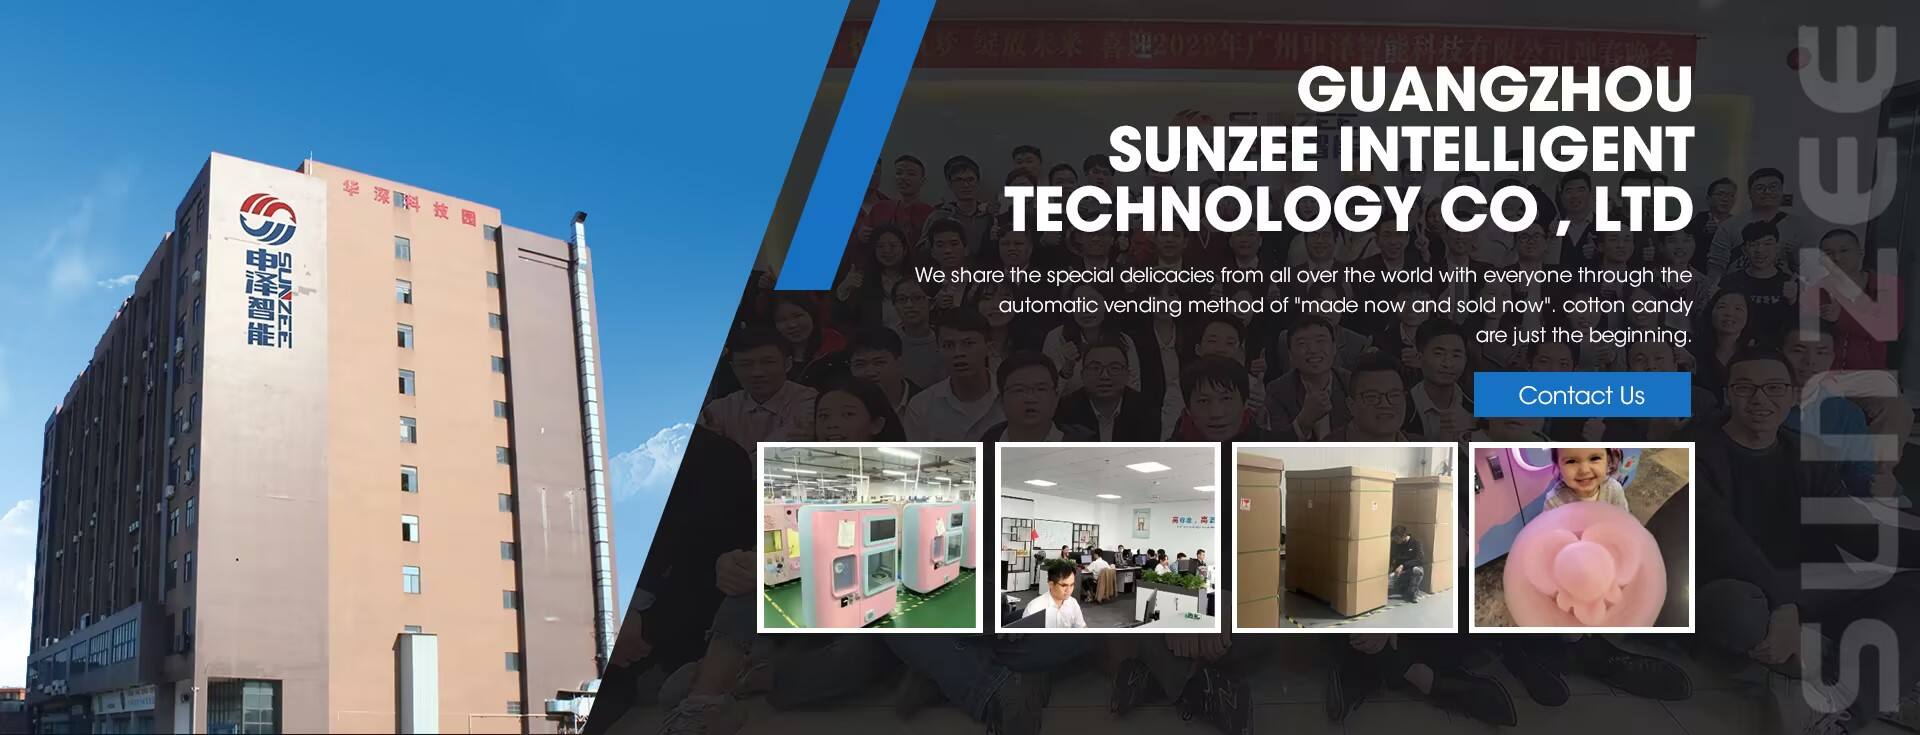 Guangzhou Sunzee Intelligent Technology Co., Ltd.